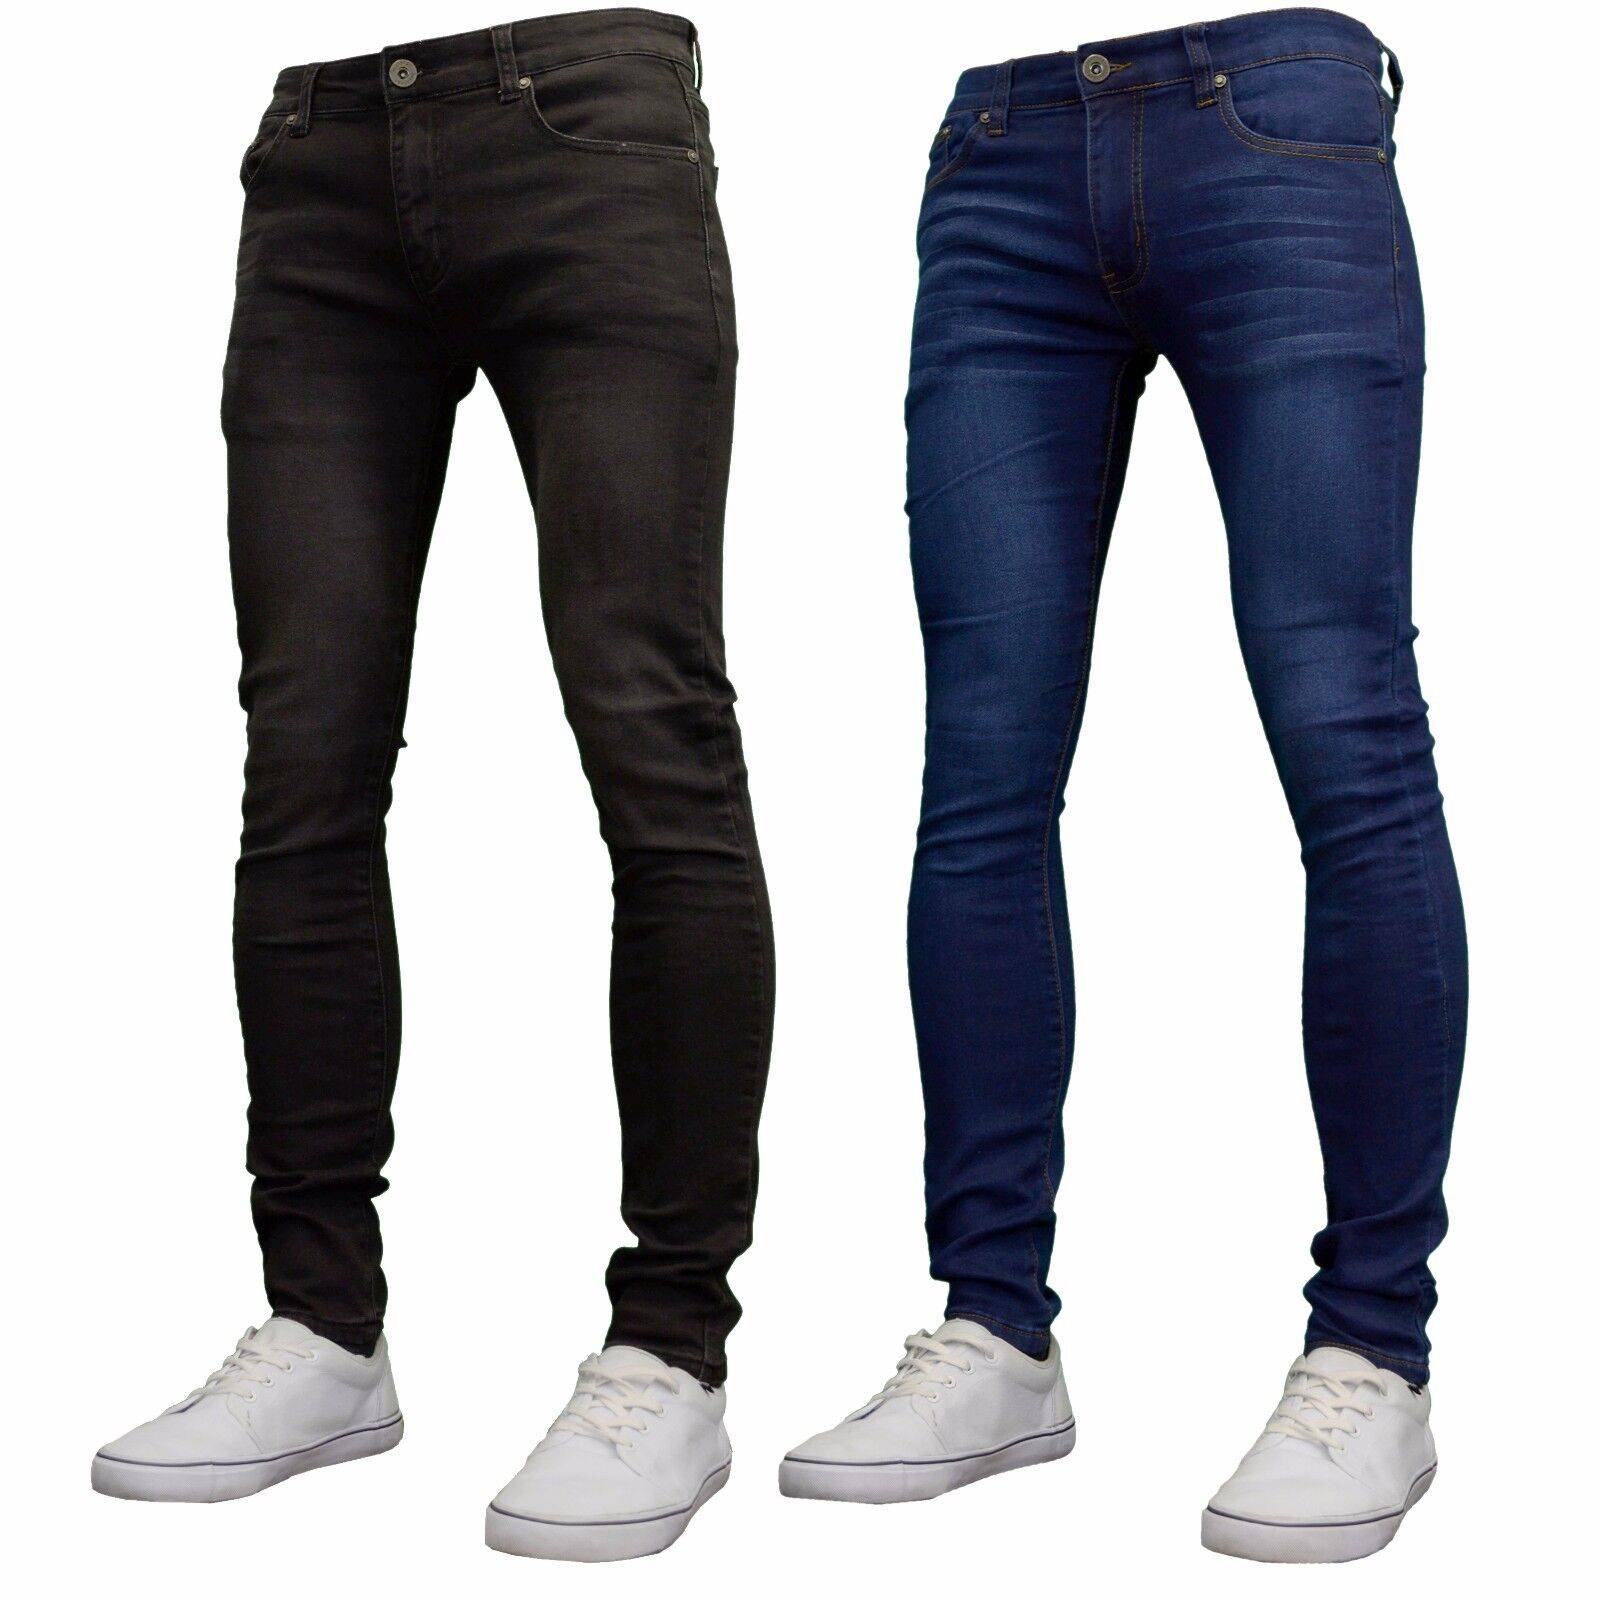 5 советов, как выбрать качественные джинсы и не пожалеть о покупке